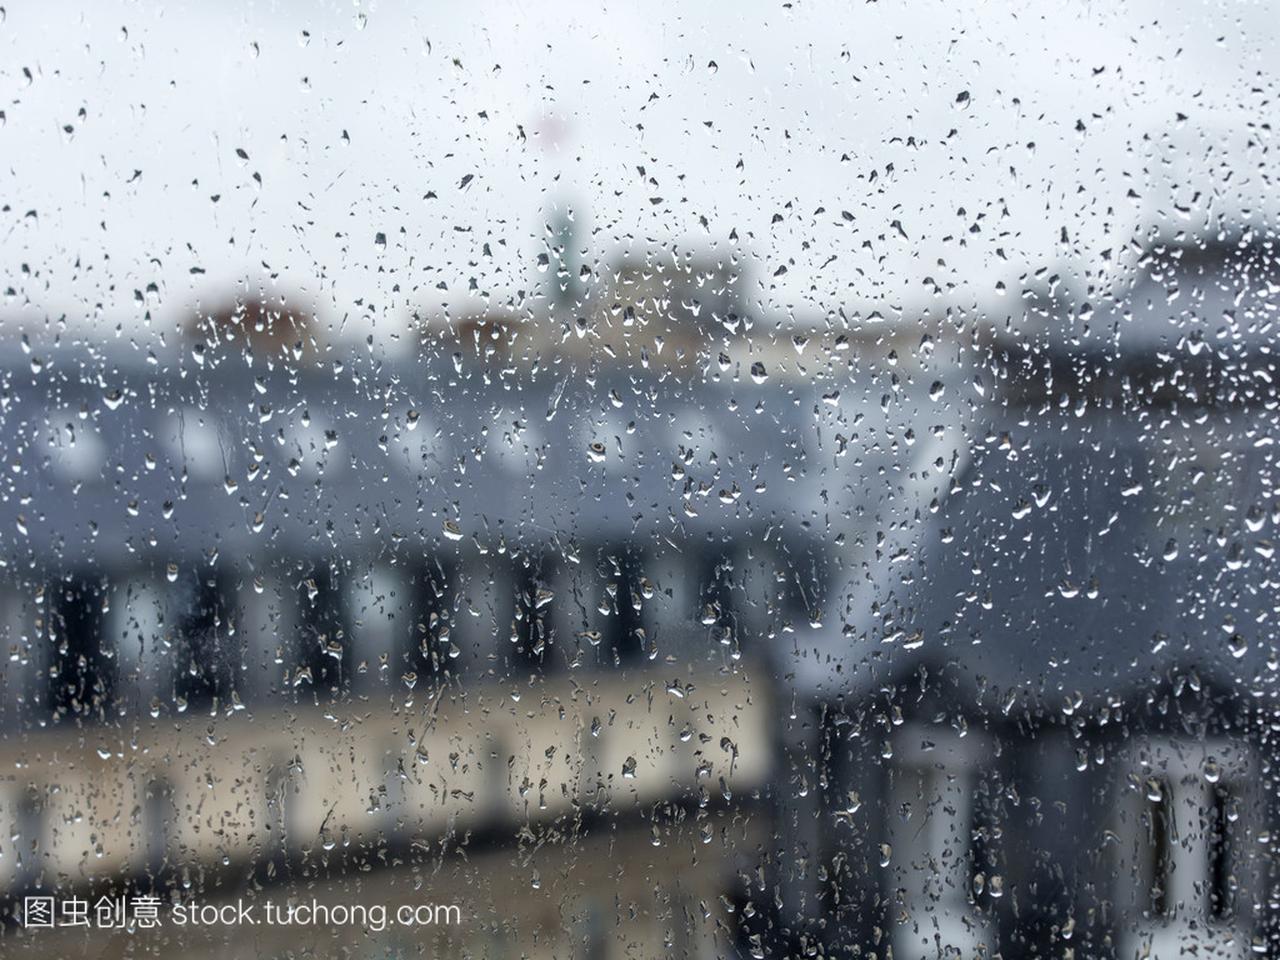 巴黎,法国,2015 年 8 月 27 日。从对城市的阴雨